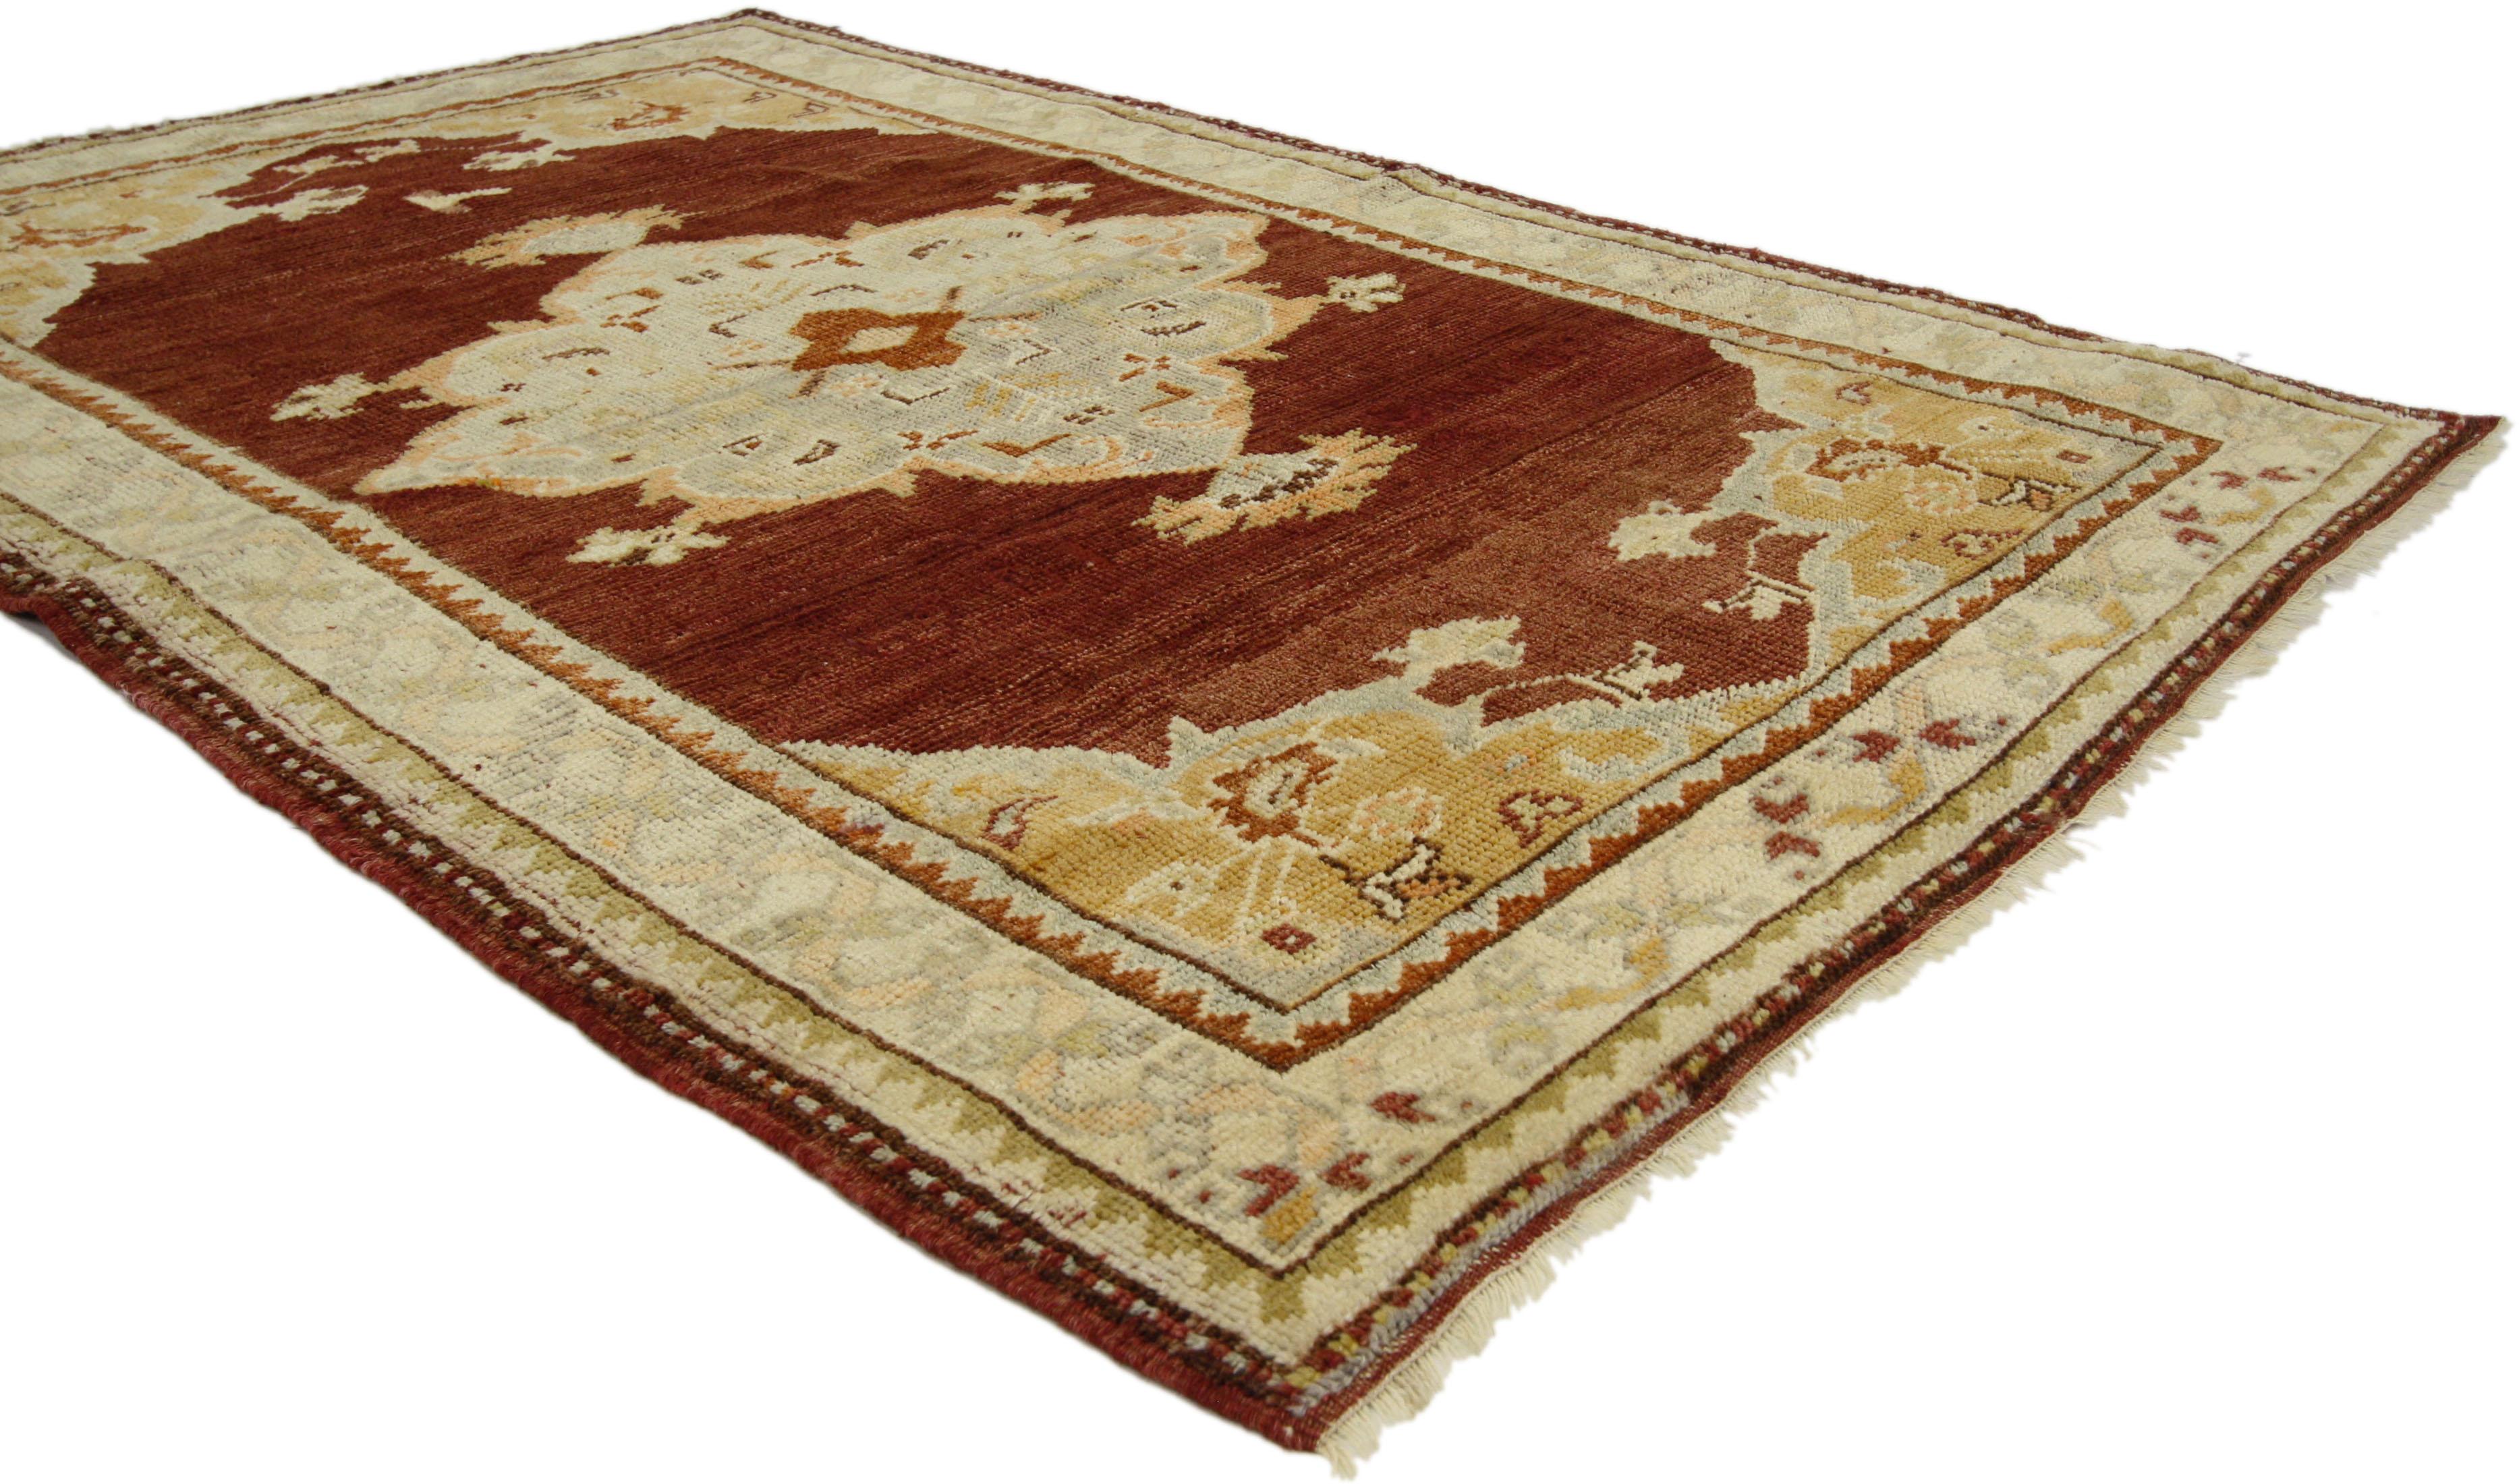 73935, tapis d'accentuation turc vintage Oushak, tapis d'entrée ou de foyer. Ce tapis turc Oushak vintage présente un style moderne et traditionnel. Imprégné de l'histoire de l'Anatolie et de couleurs raffinées, ce tapis Oushak vintage allie